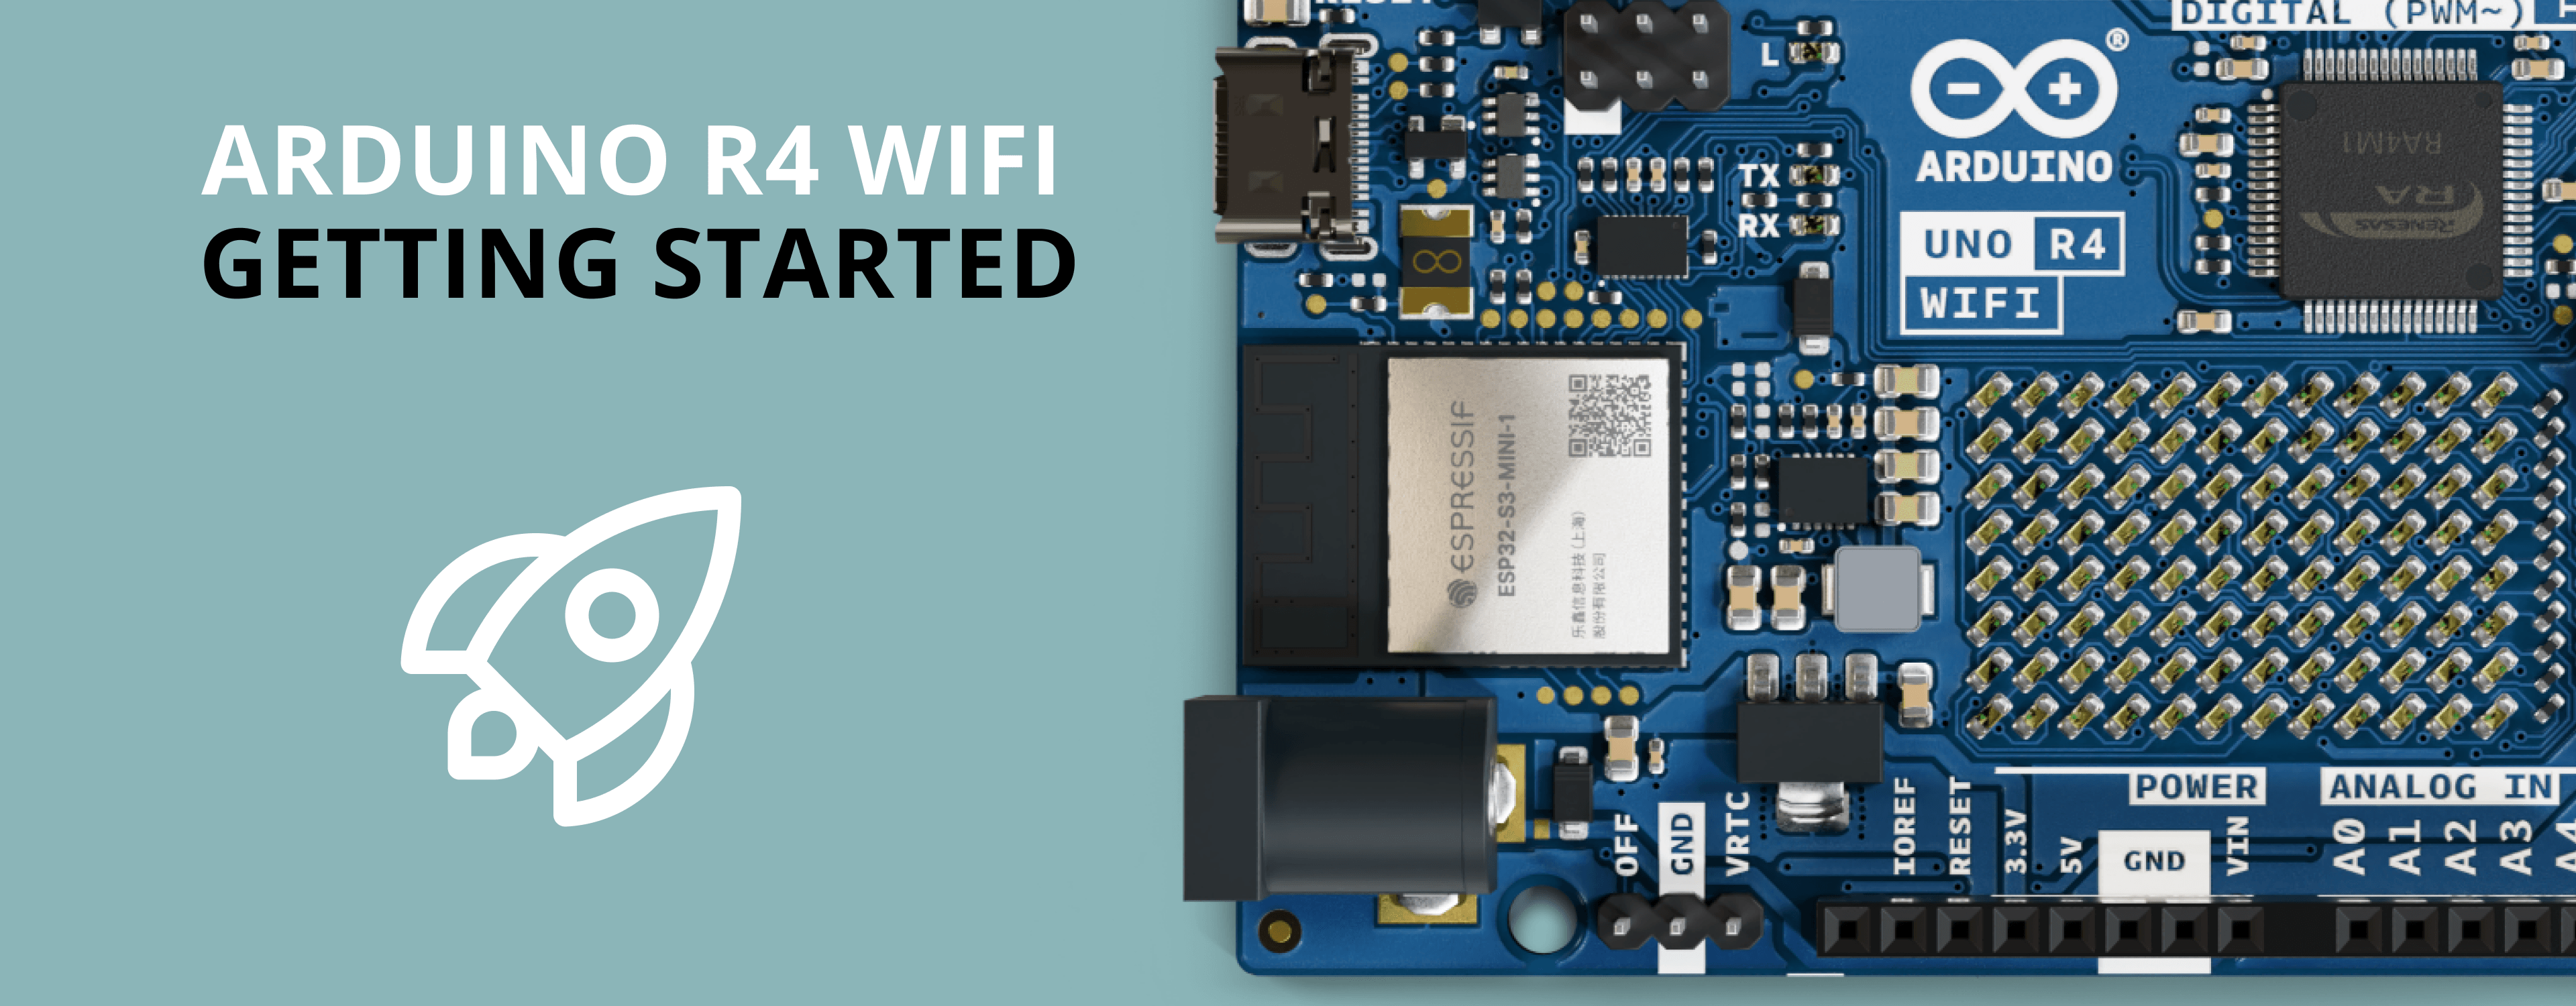 Arduino Uno R4 WiFi: La Revolución de la Conectividad